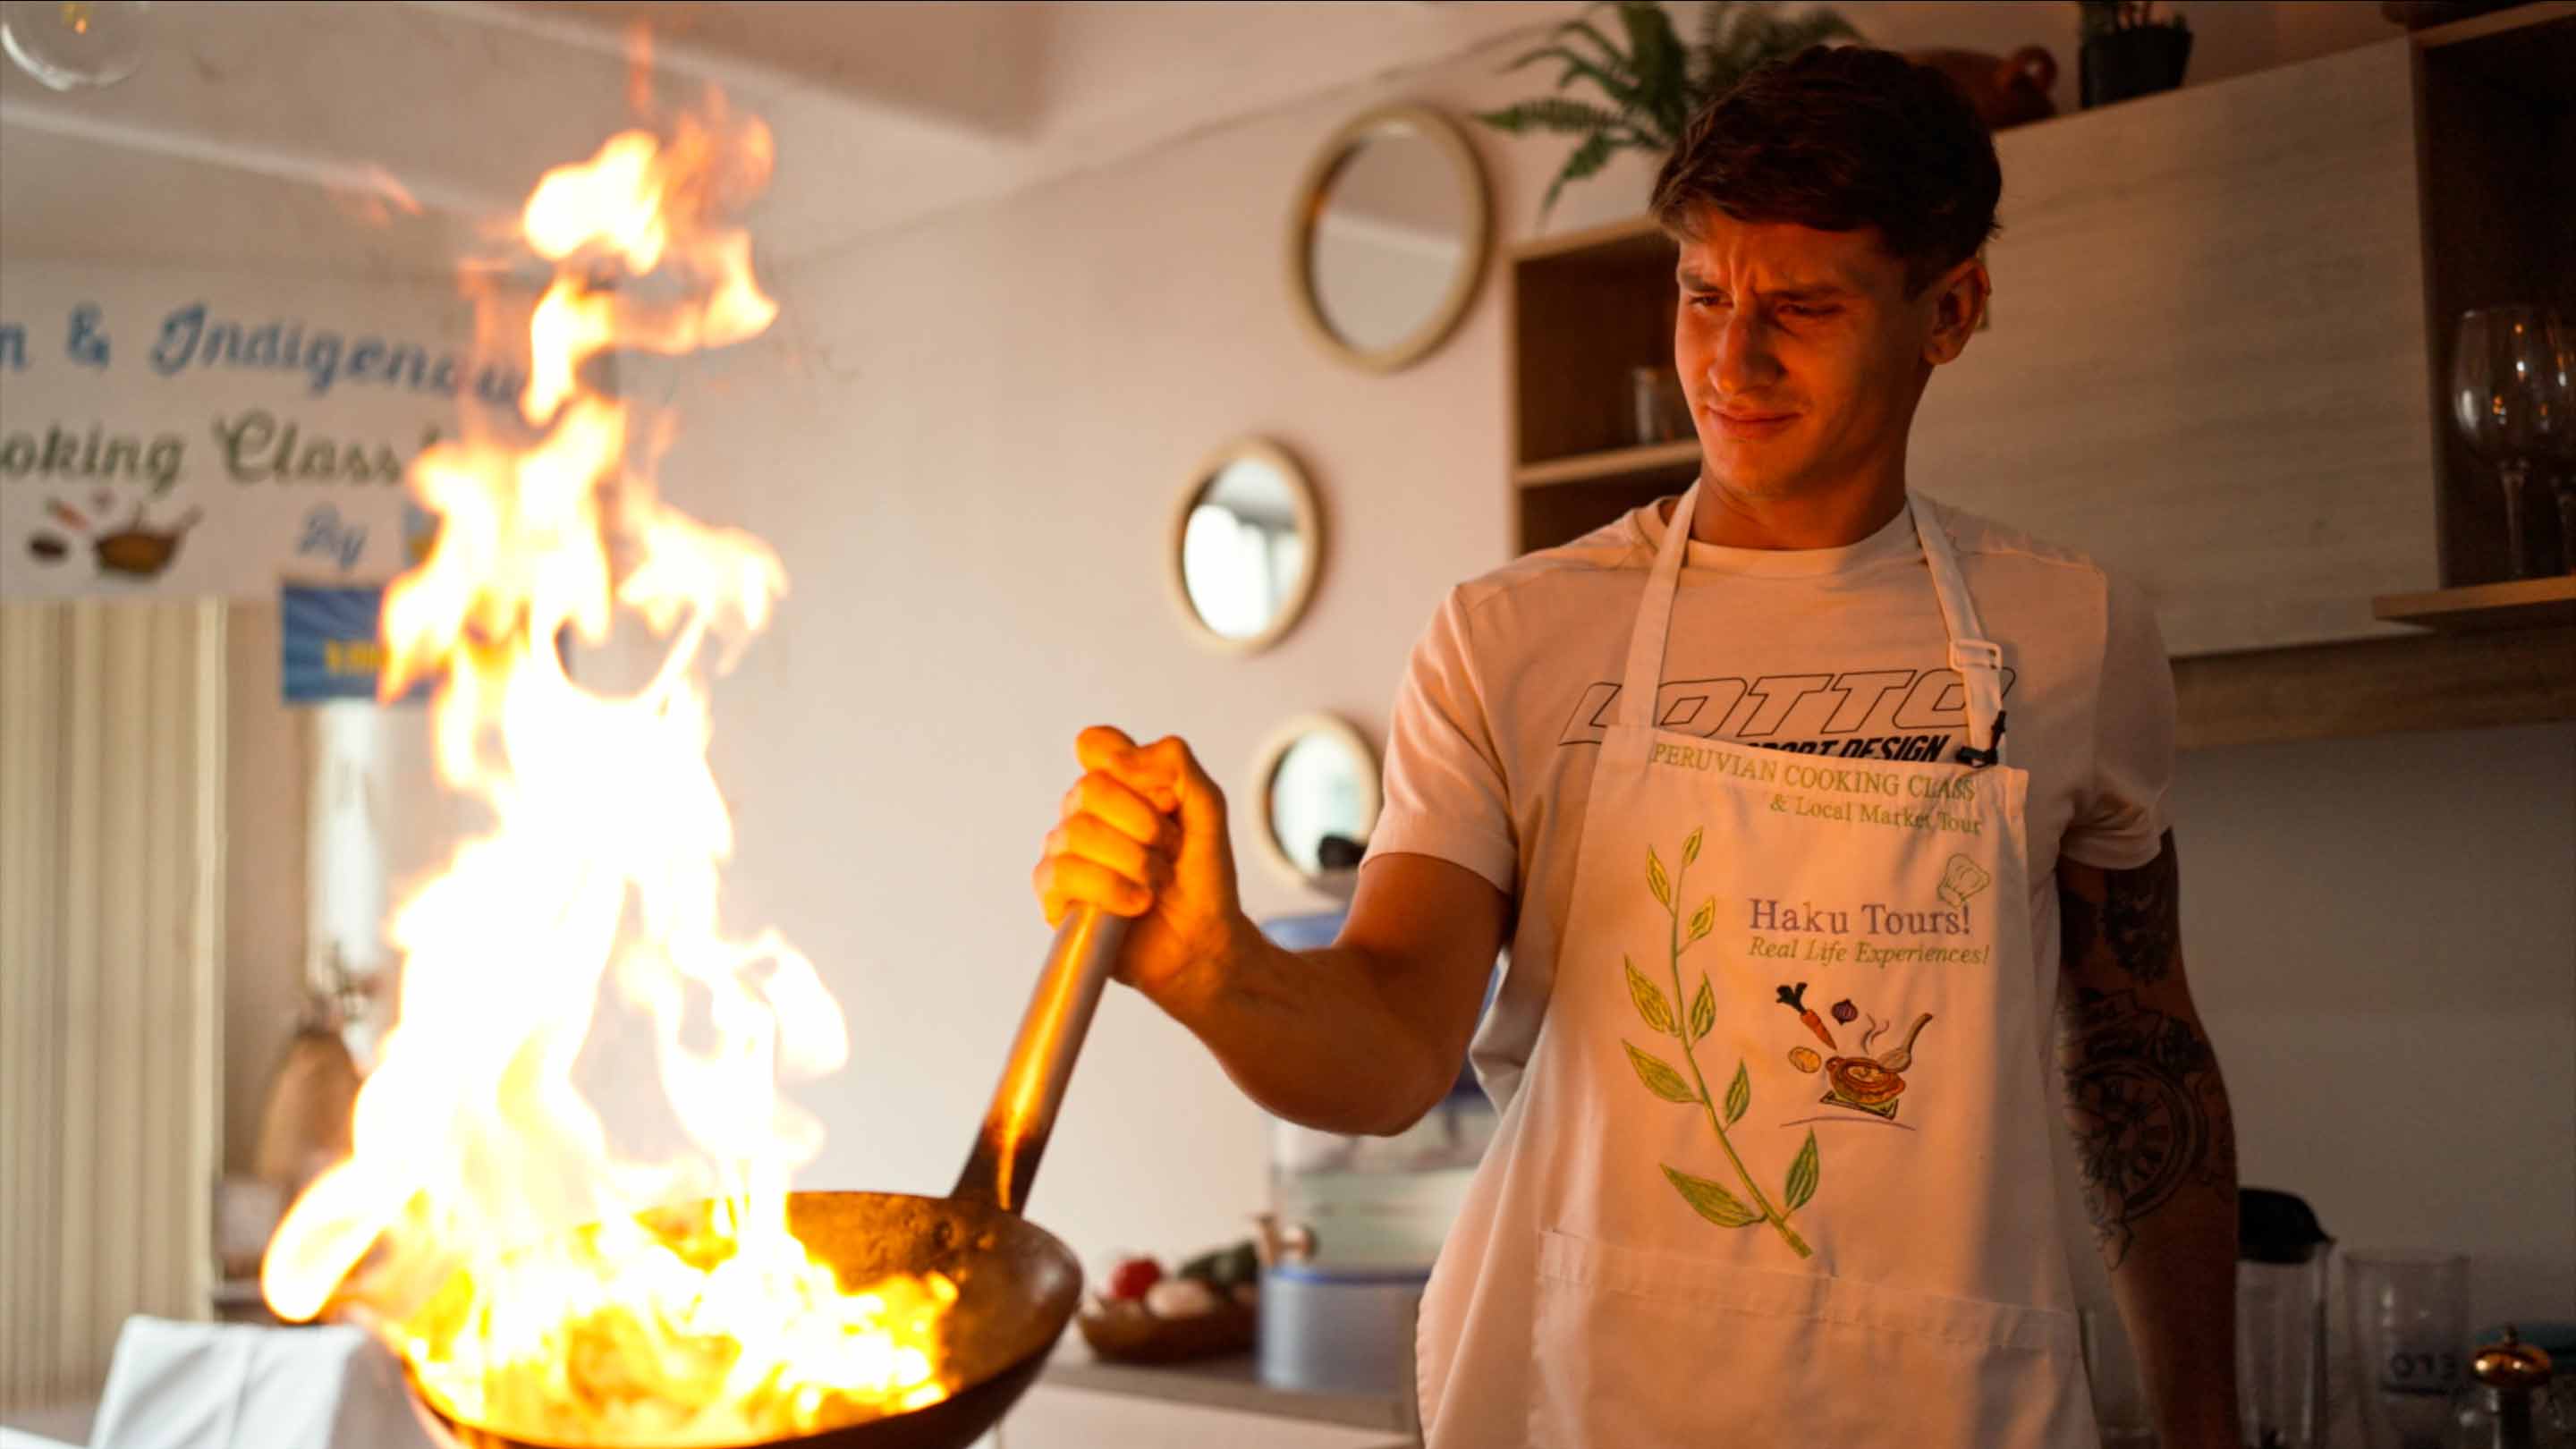 Camilo Ugo Carabelli prepares the lomo saltado at a cooking class in Lima, Peru.